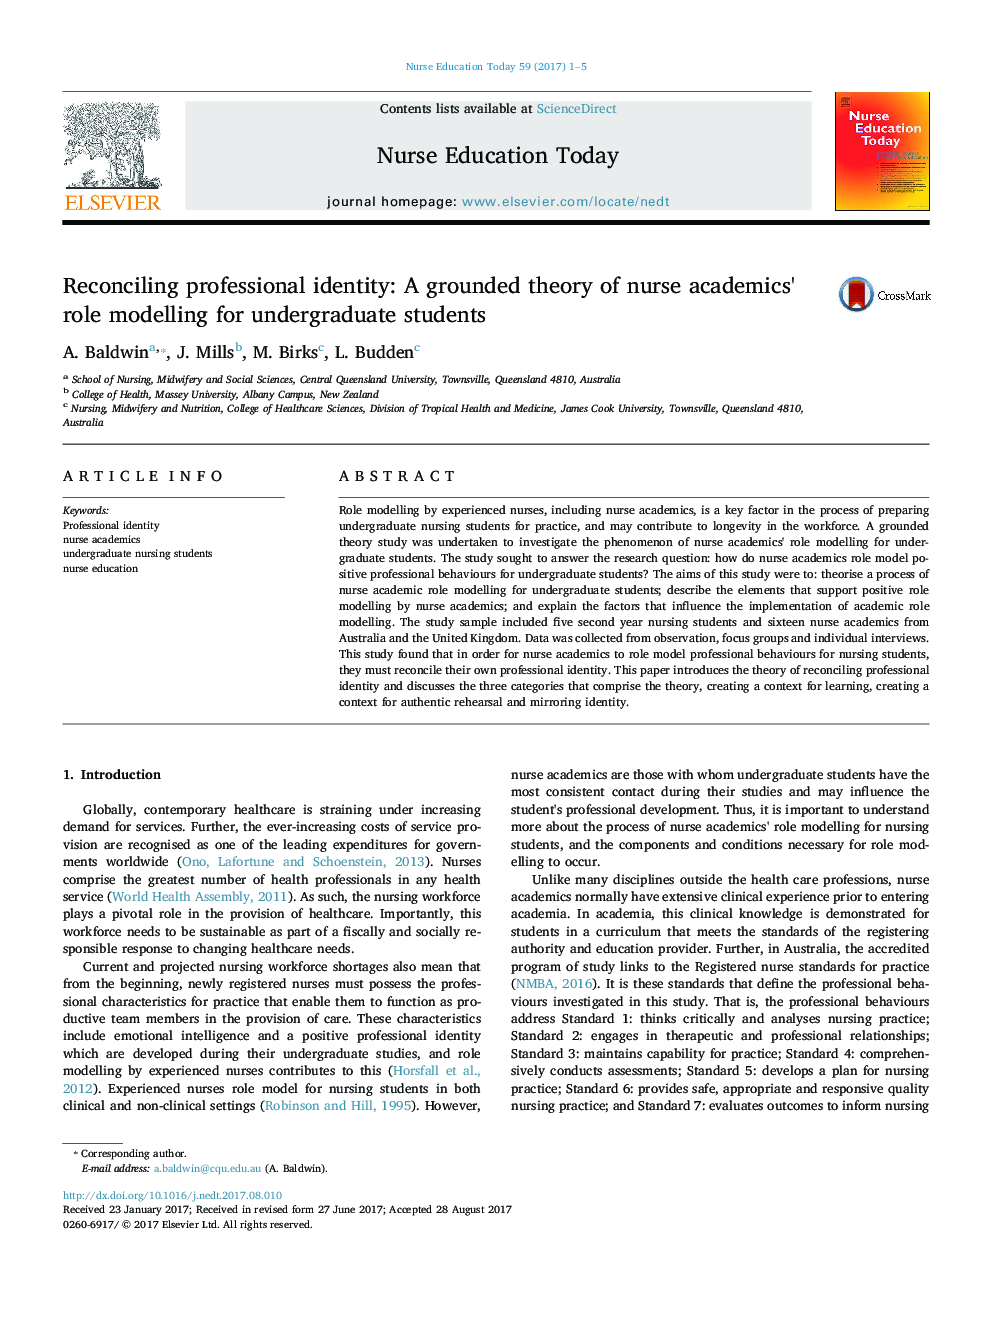 تطبیق هویت حرفه ای: تئوری مبتنی بر مدل سازی نقش دانشگاهی پرستاران برای دانشجویان کارشناسی 